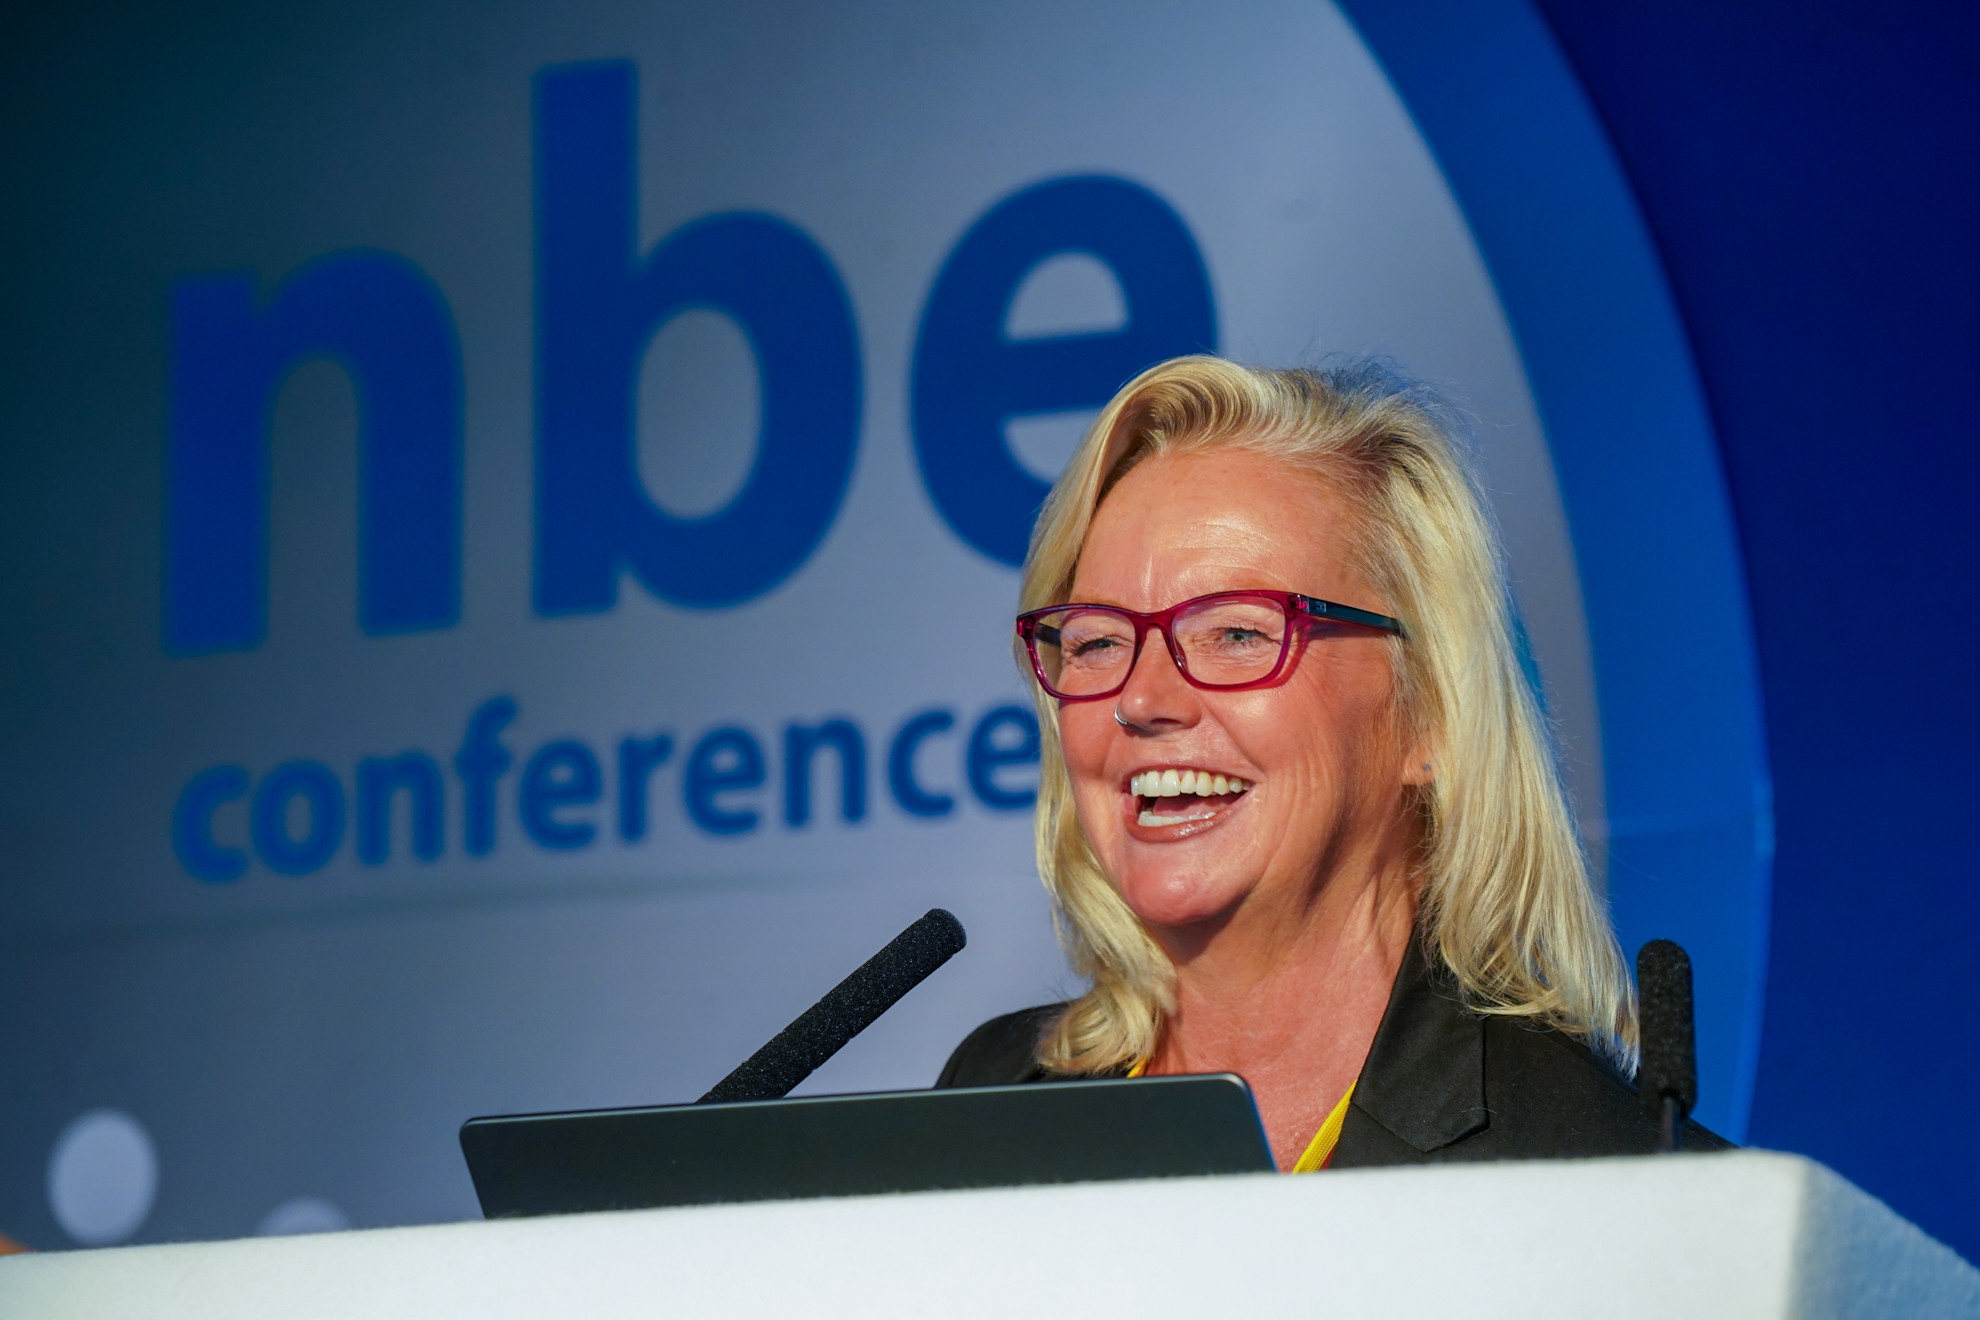 Sharon Rindsland, NBE Conference Director